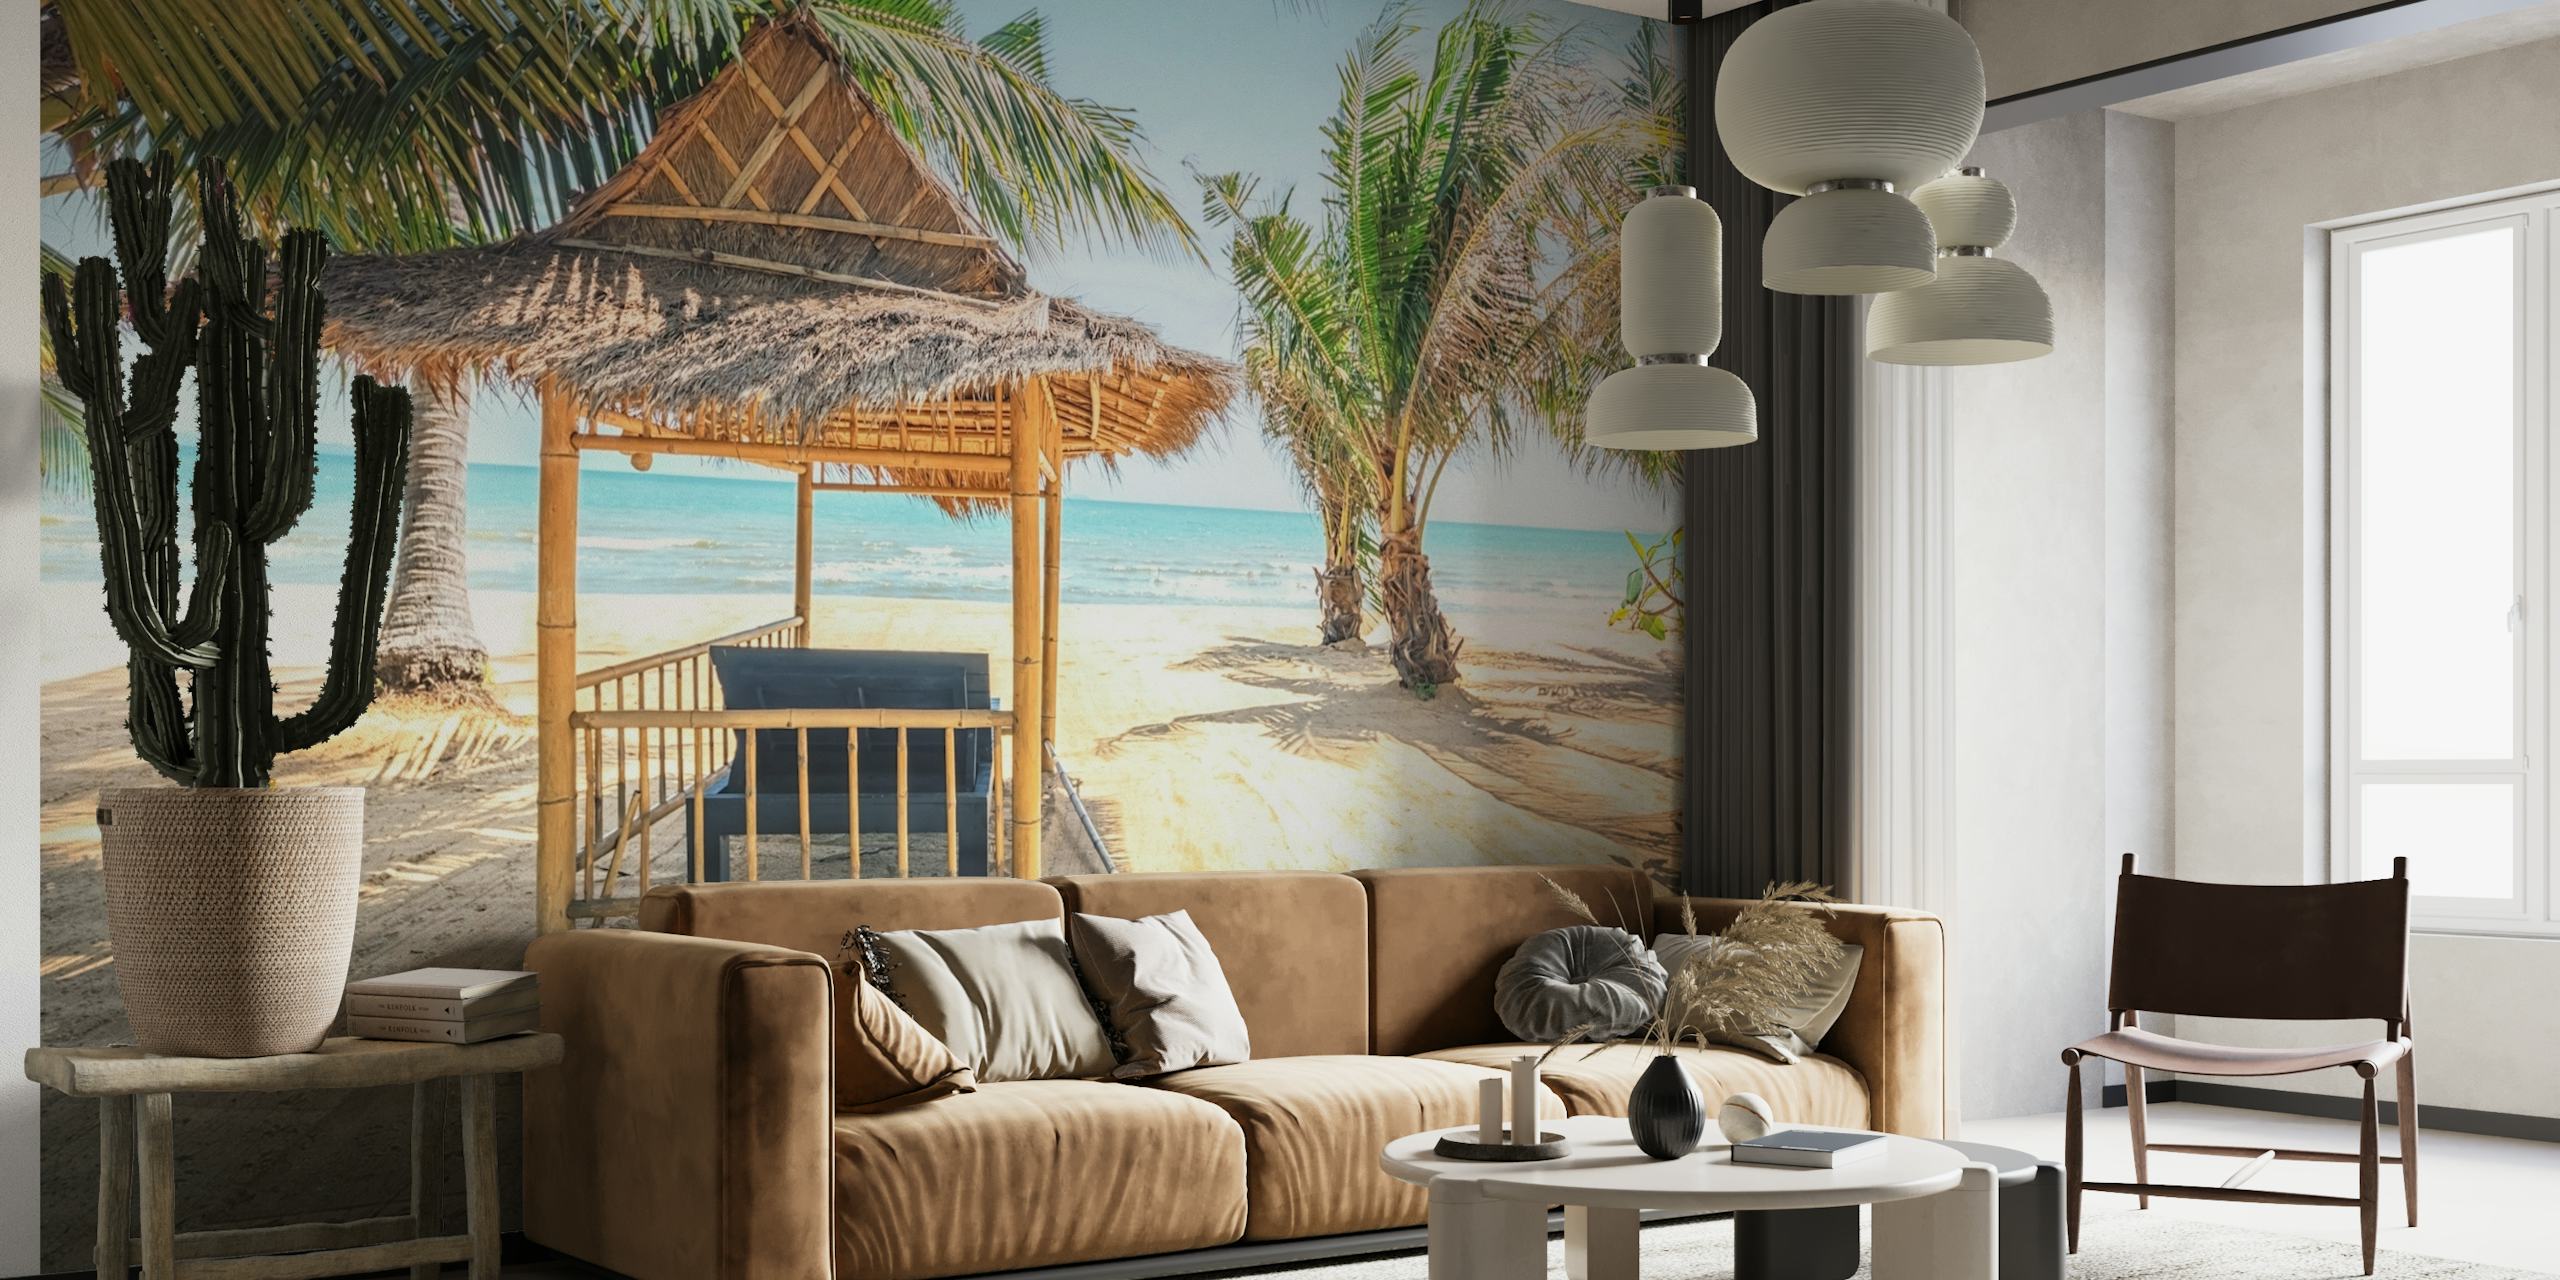 Hut met rieten dak op een zandstrand met palmbomen en muurschildering met uitzicht op de oceaan